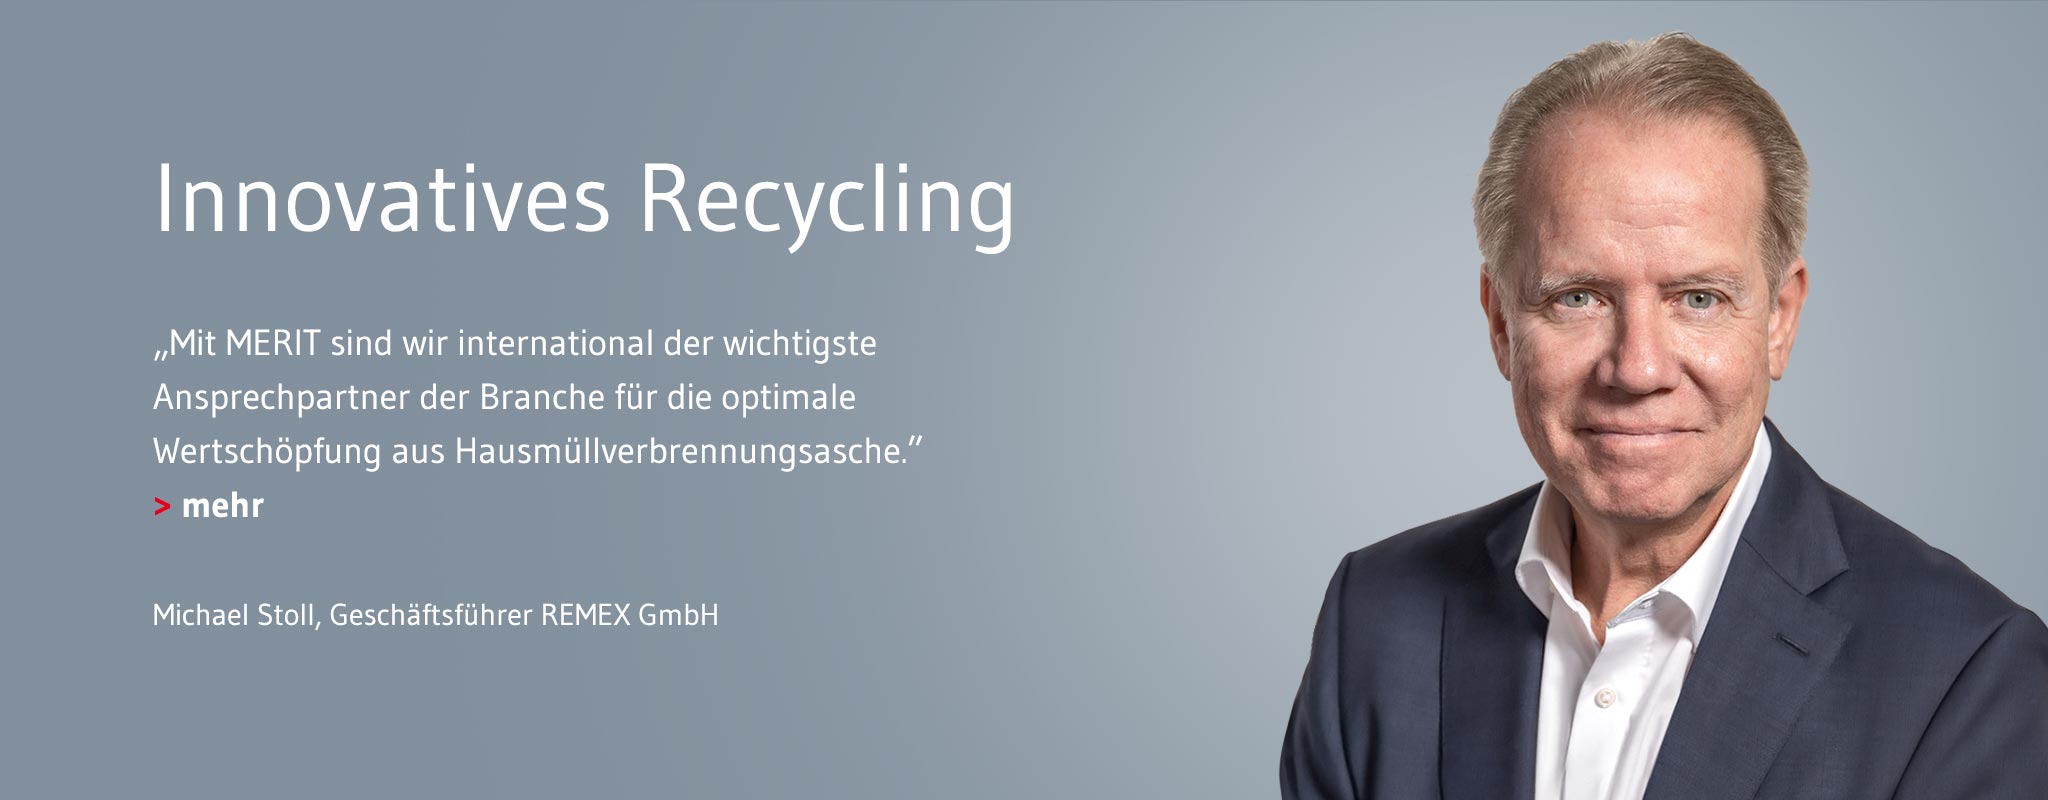 Aufbereitung von Hausmüllverbrennungsasche mit neuen Recyclingtechnologien rmx-processing_headimage_testimonials_de.jpg